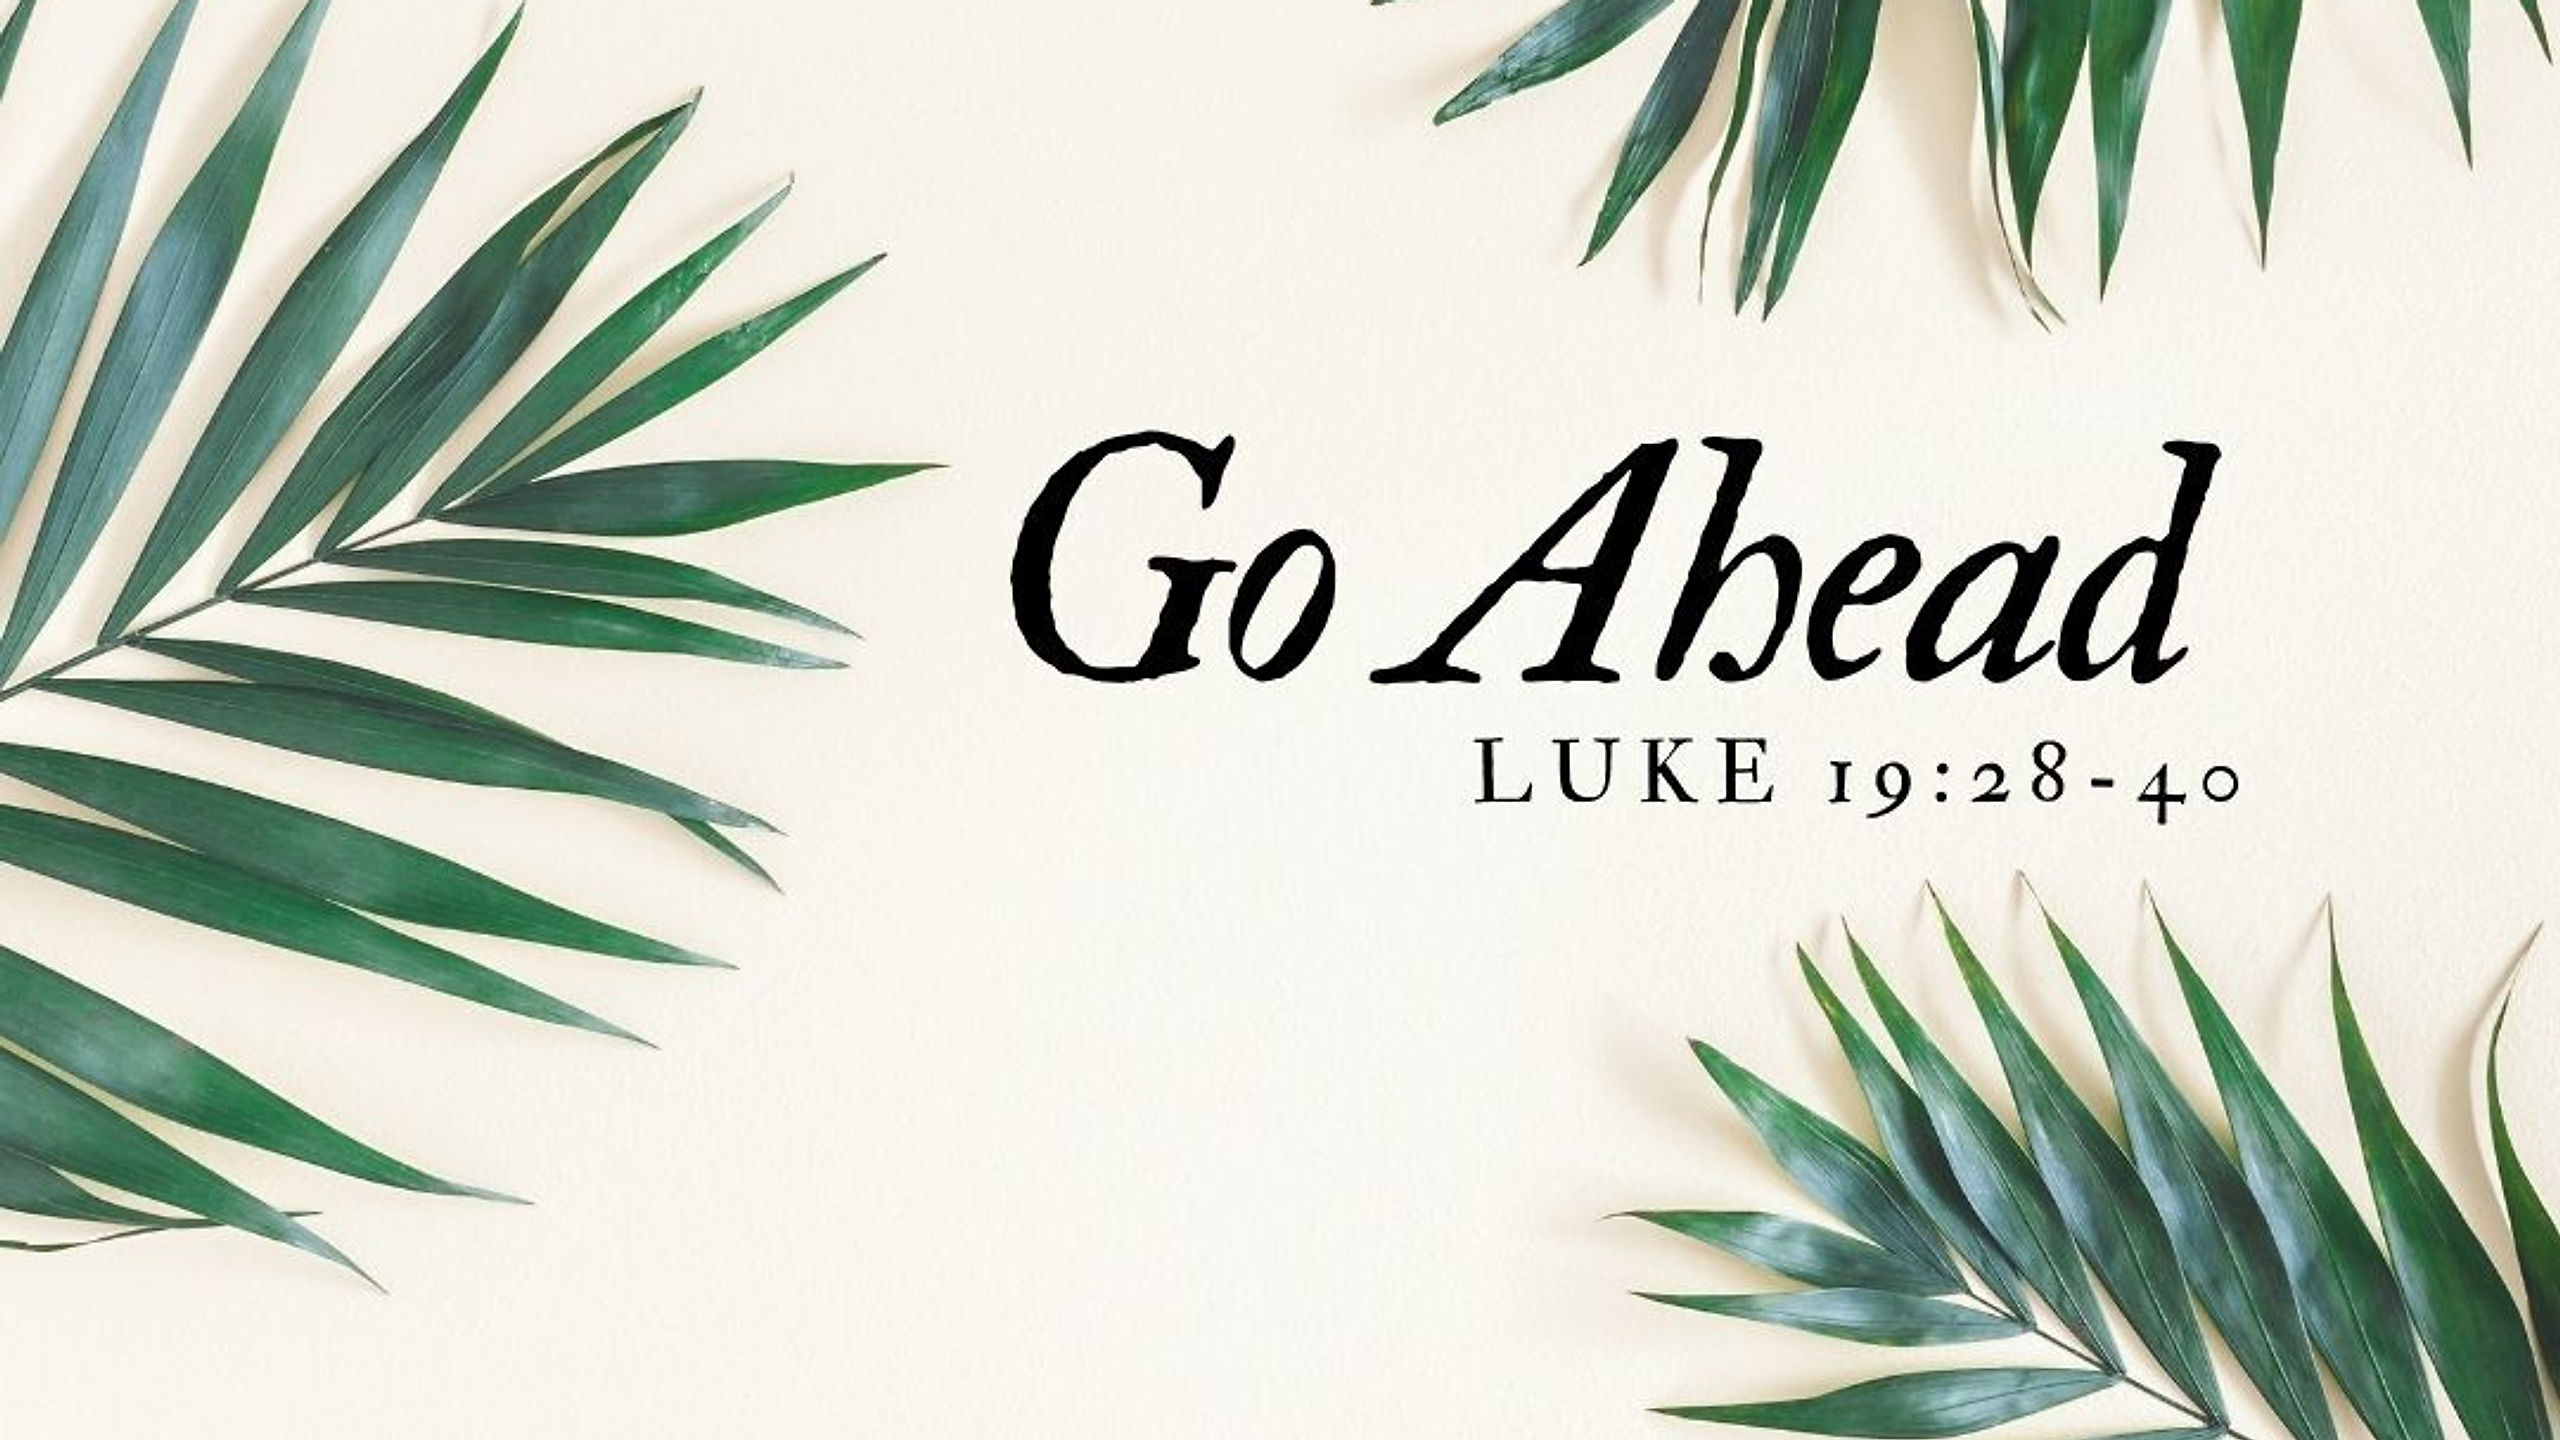 Palm Sunday: Go Ahead